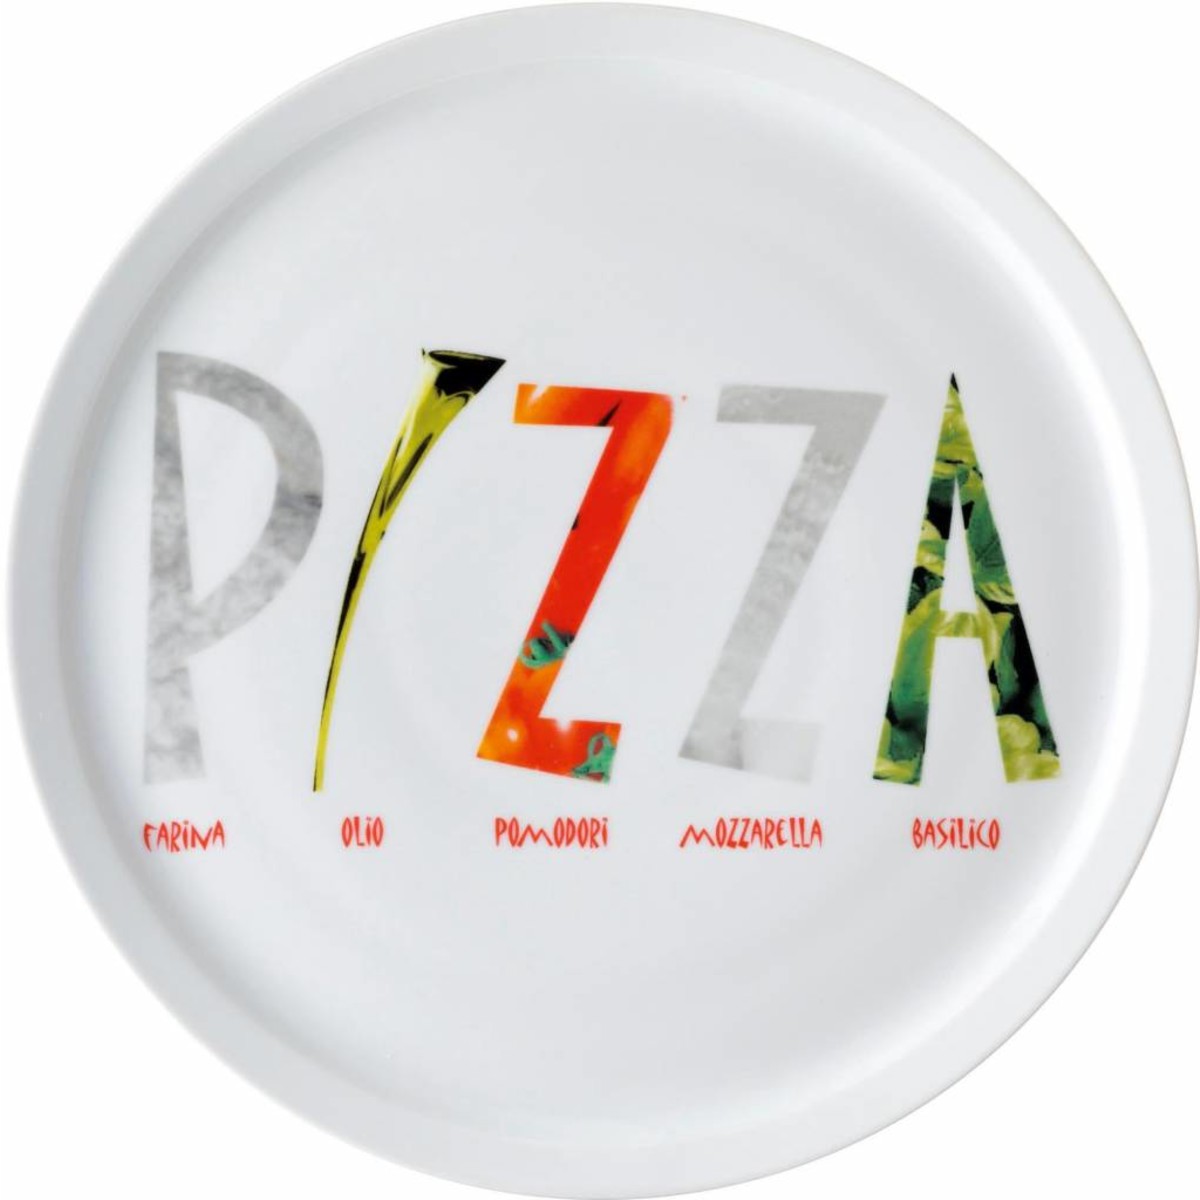 Pizzateller weiß mit Dekor "Pizza" Ø 30 cm